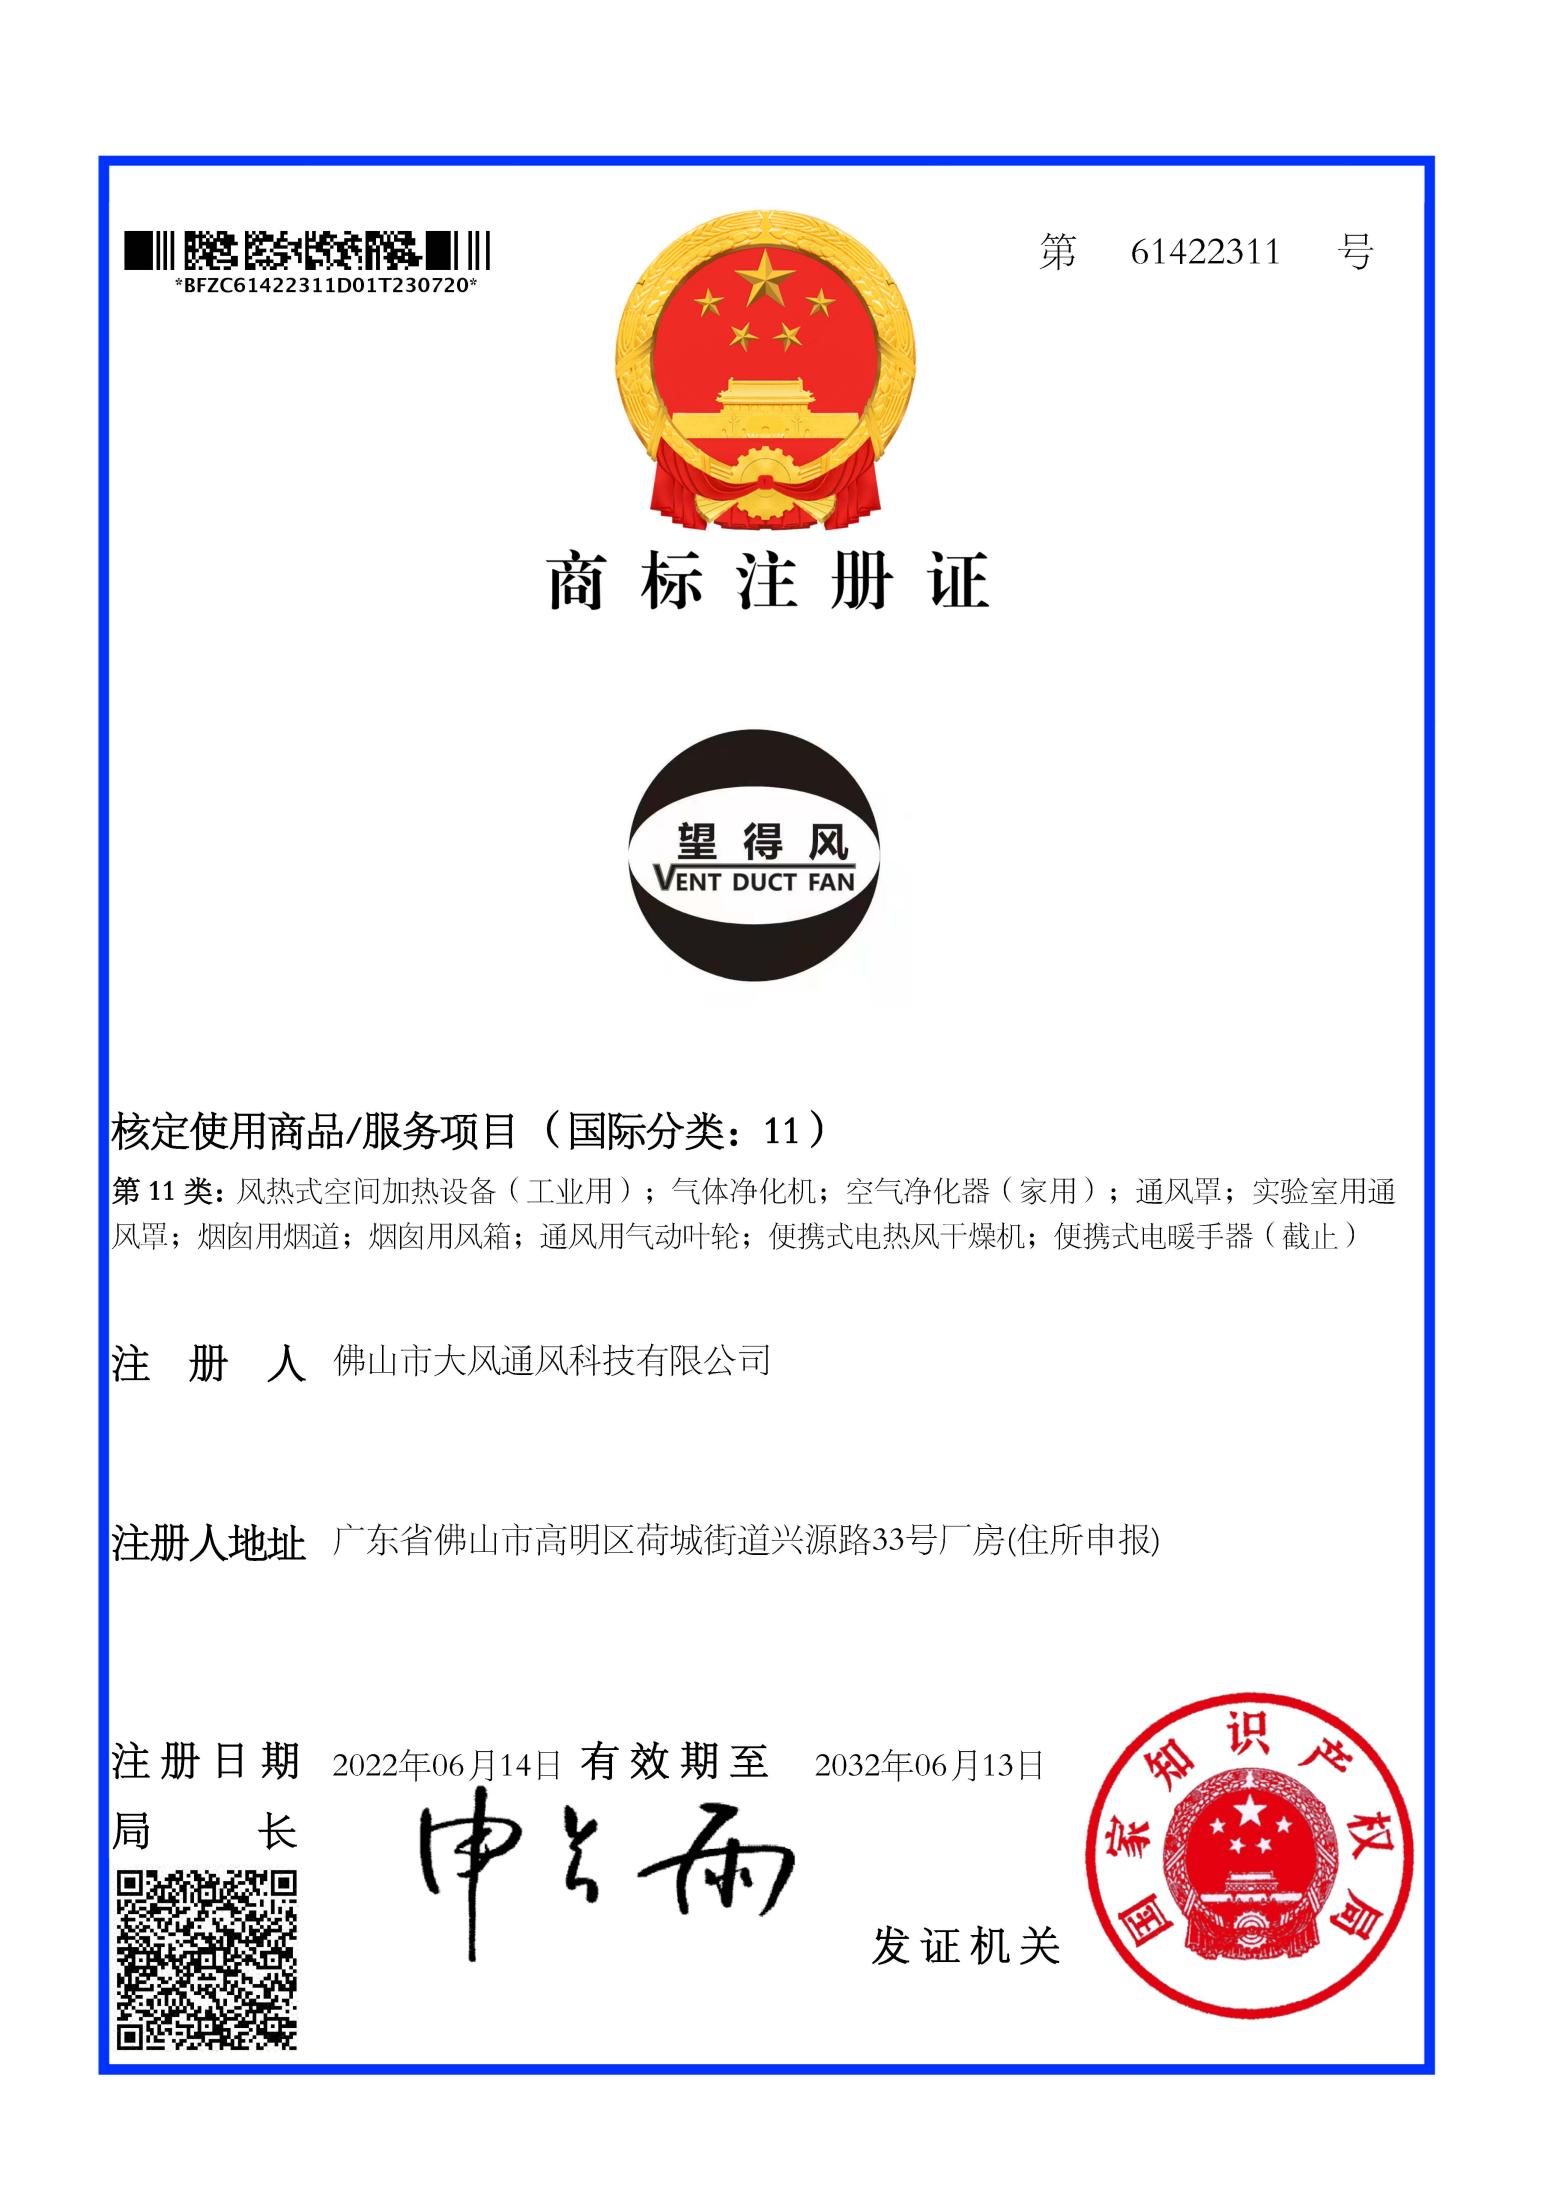 Trademark certificate 04